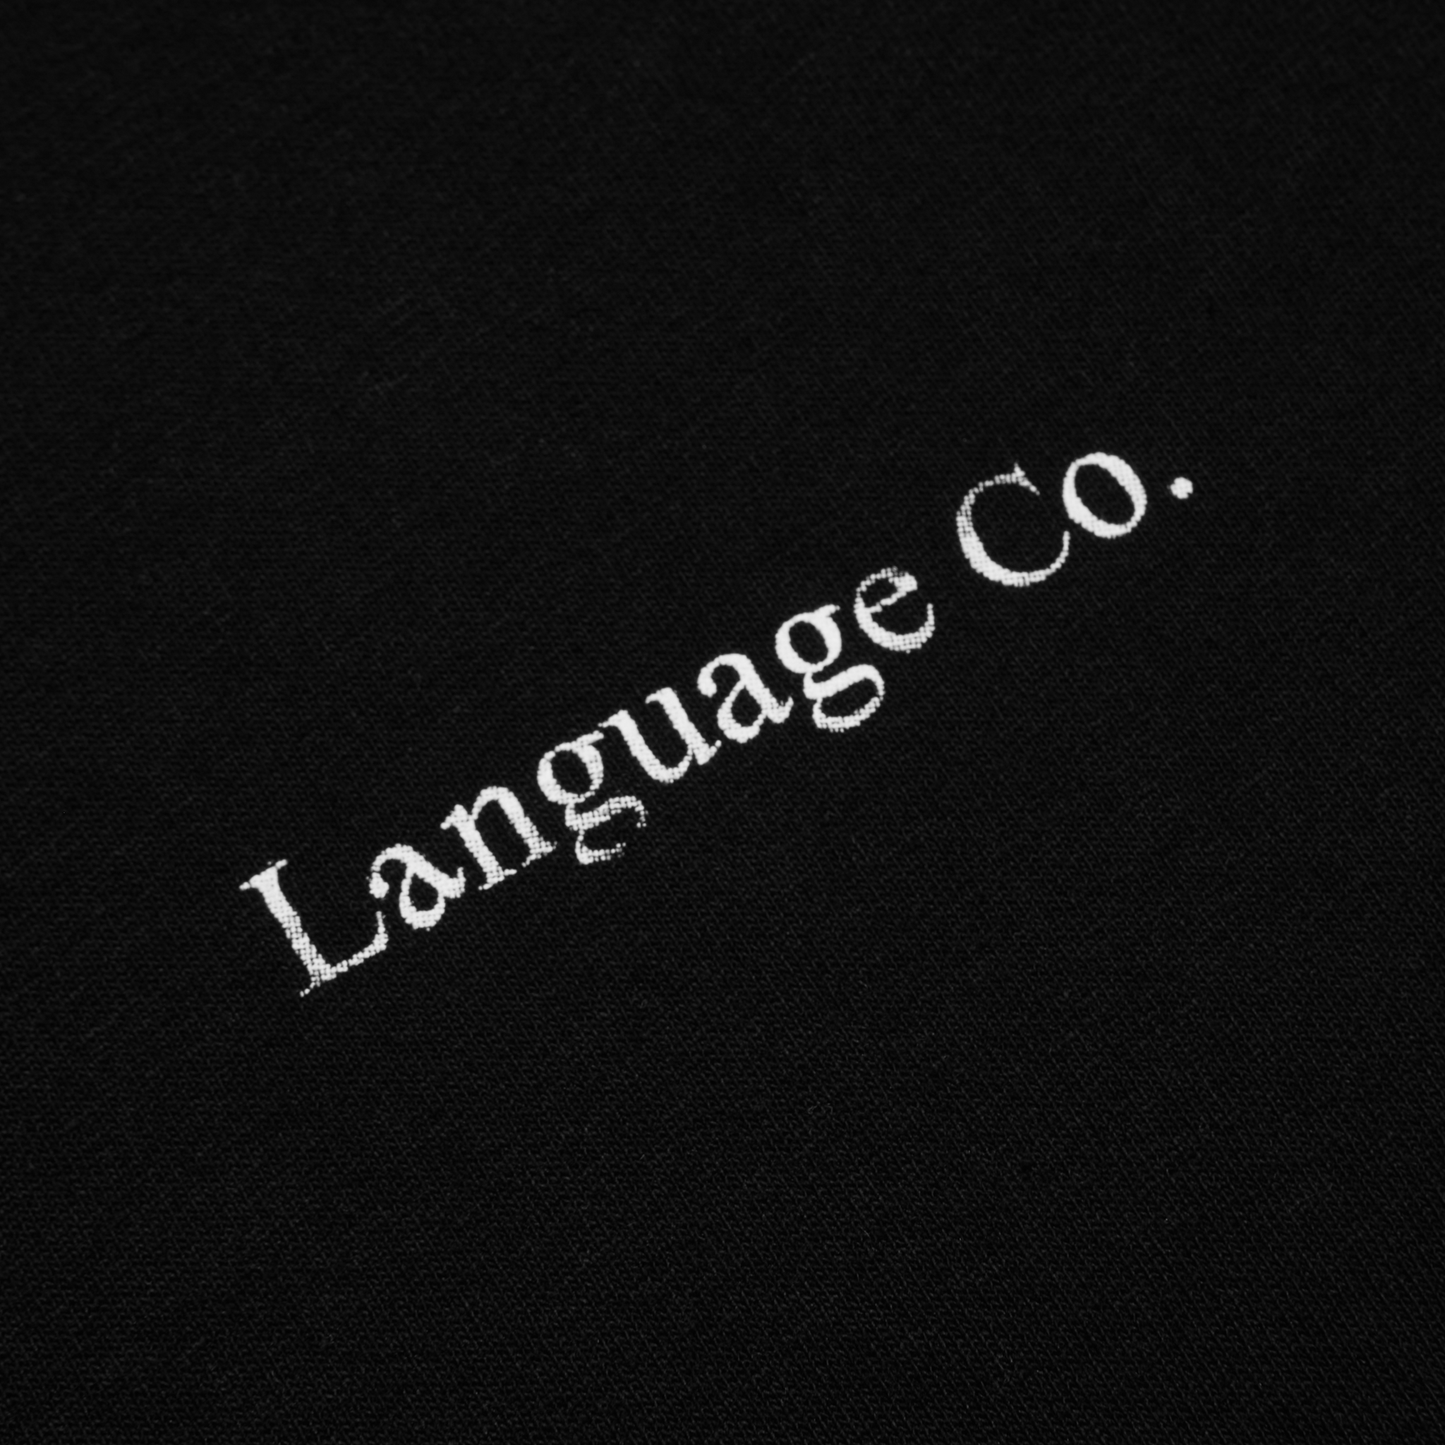 Language T-Shirt - Black